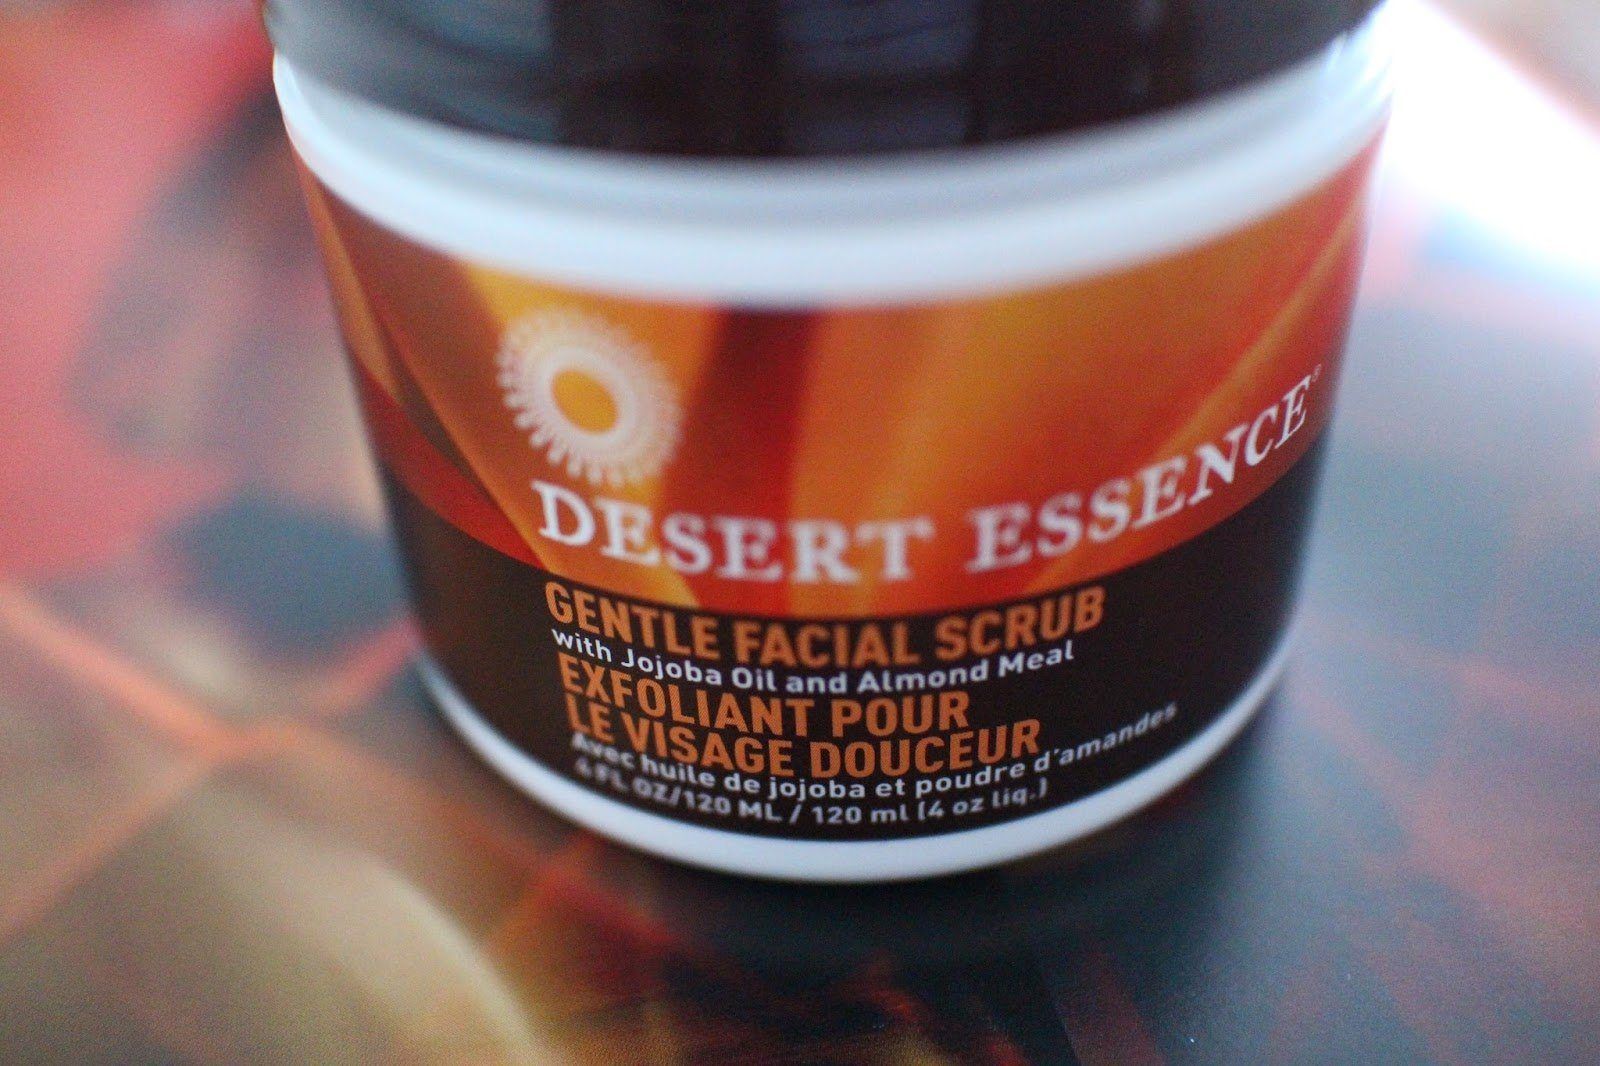 Desert essence facial scrub